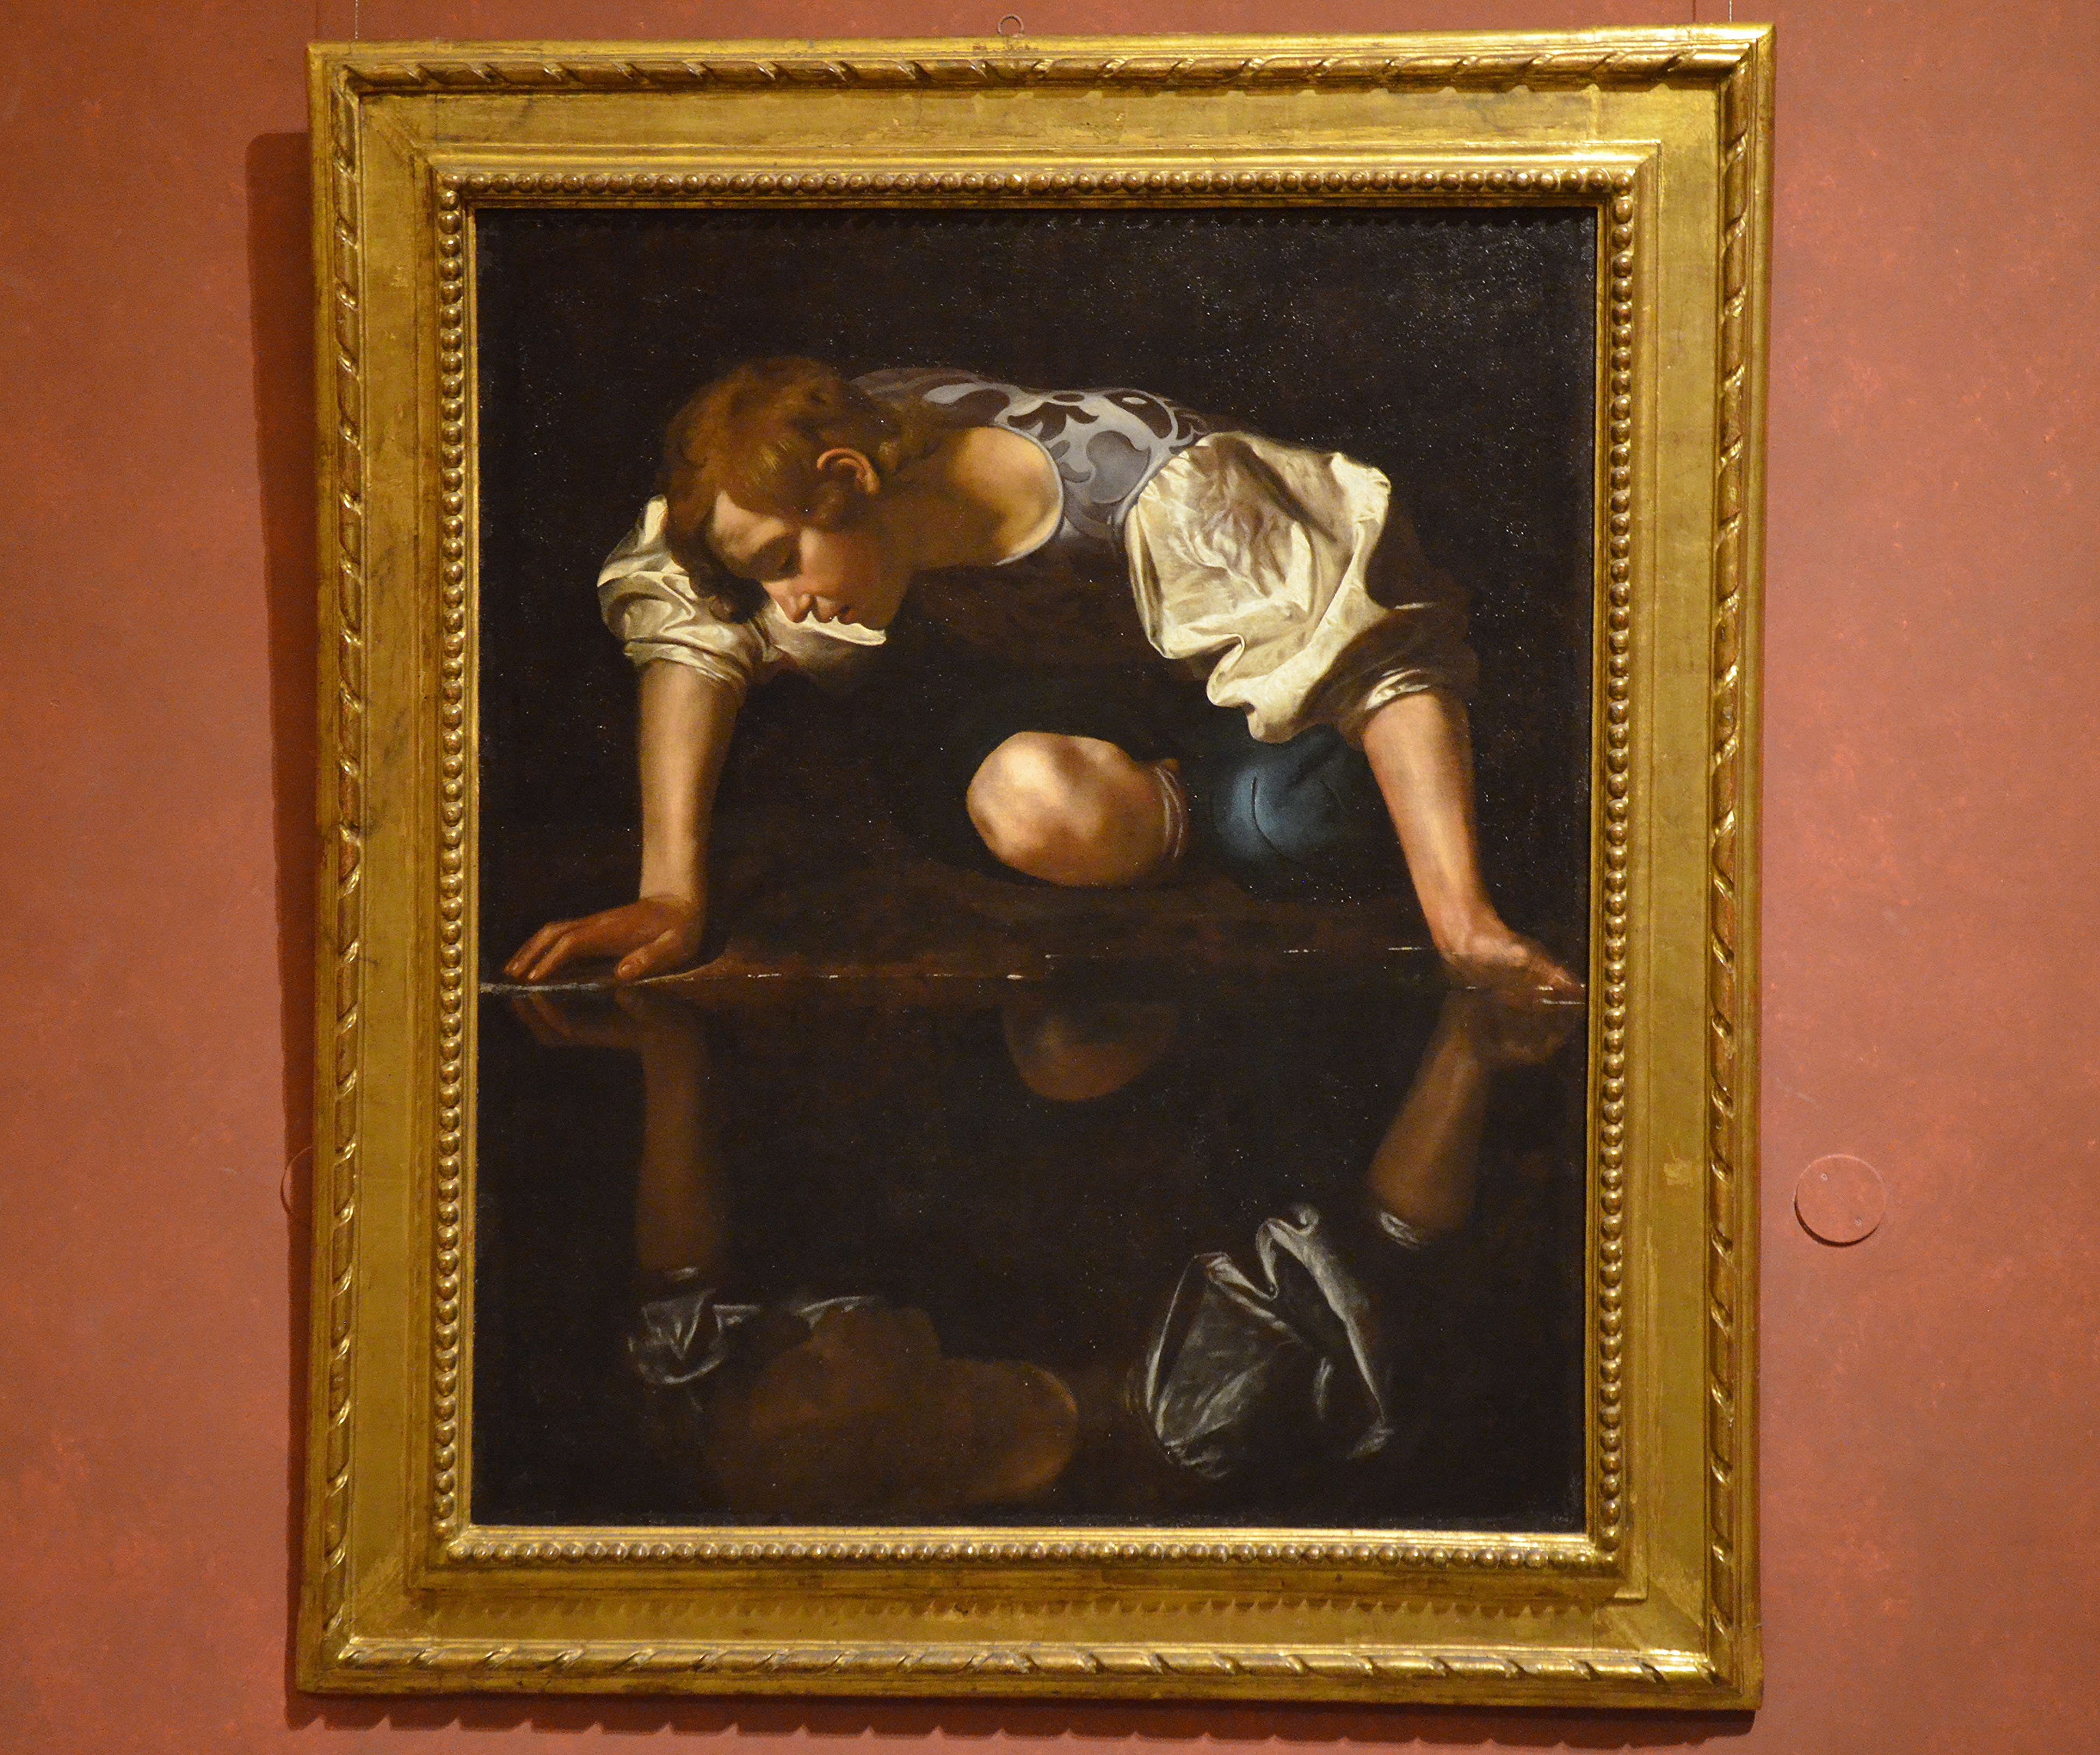 Narcissus by Caravaggio, 1597–1599, Galleria Nazionale d'Arte Antica (21809913606)